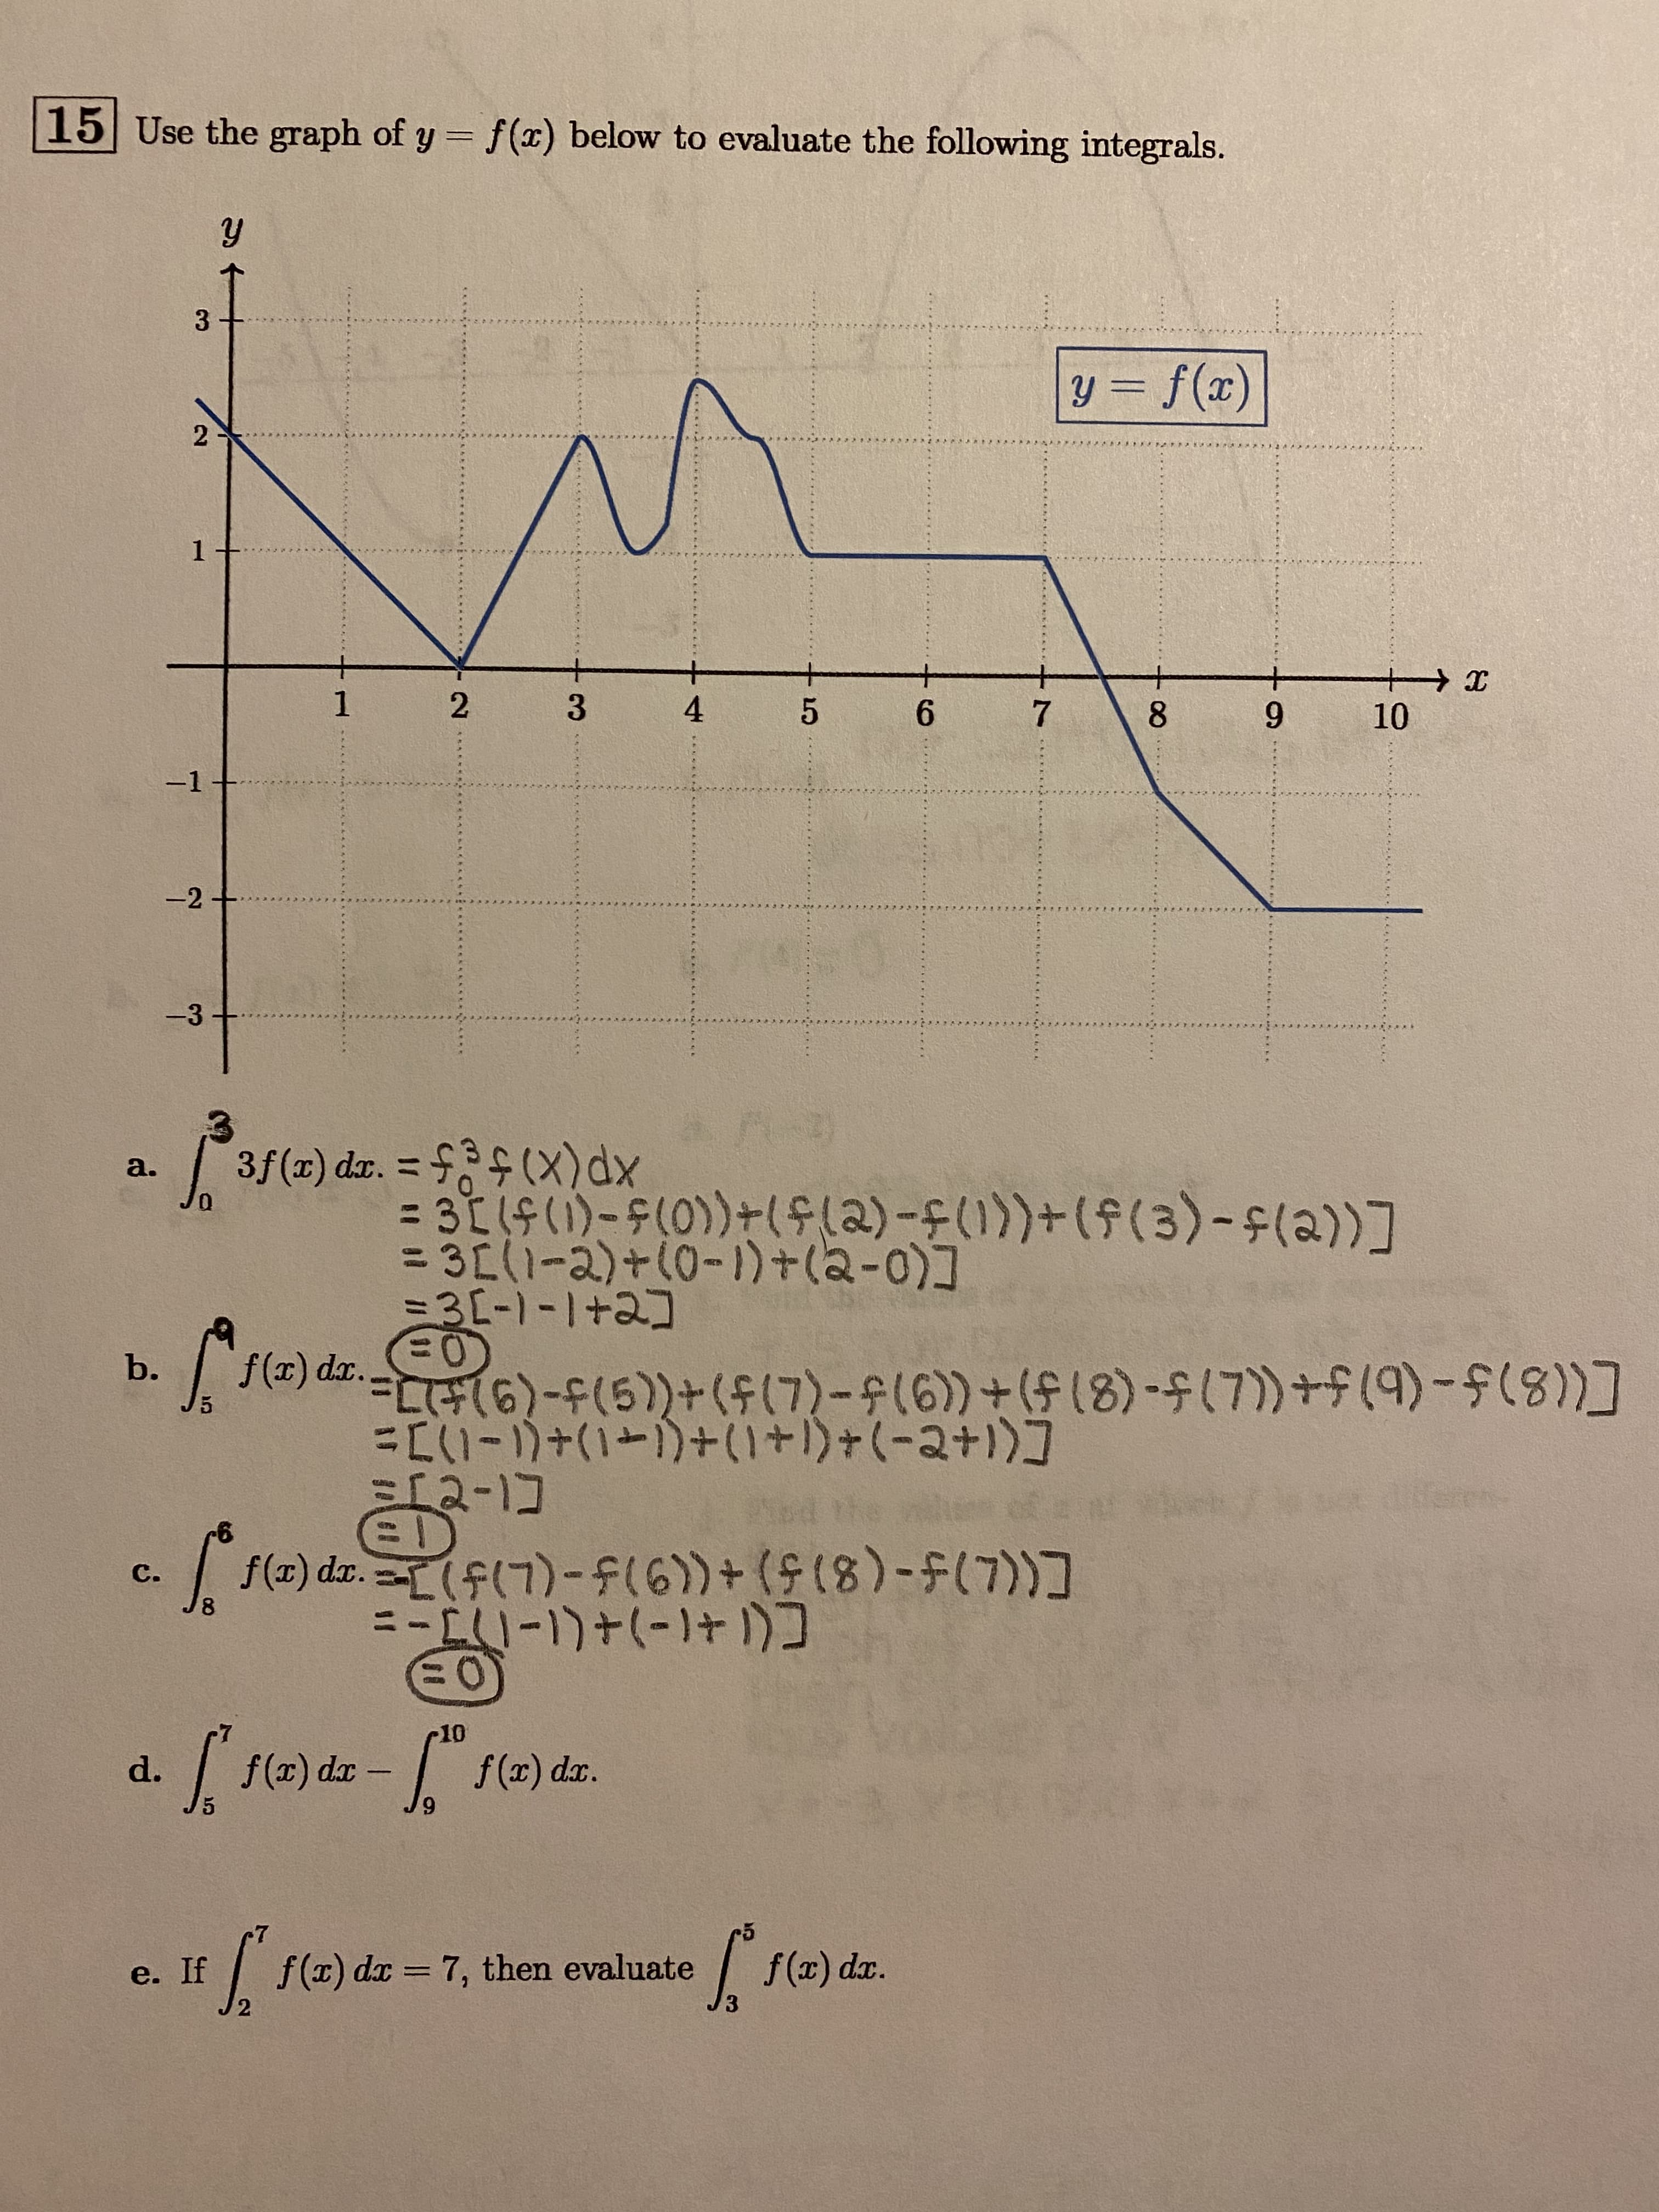 10
d.
f(x) dx -
f(r) dz.
6.
e. If
f(T) dx = 7, then evaluate
f(x) da.
%3D
